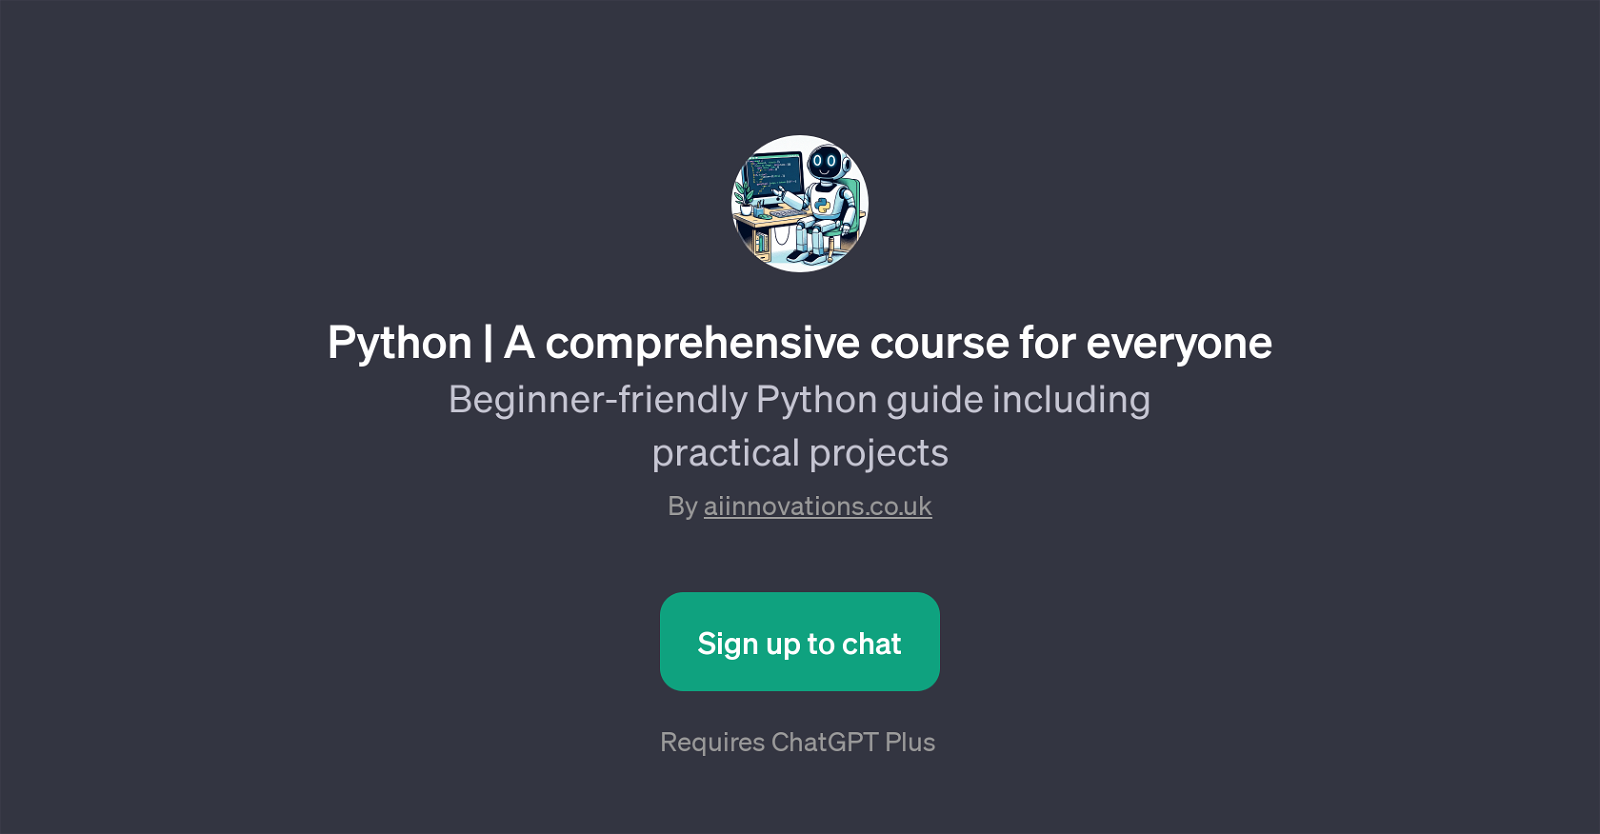 Python | A comprehensive course for everyone website